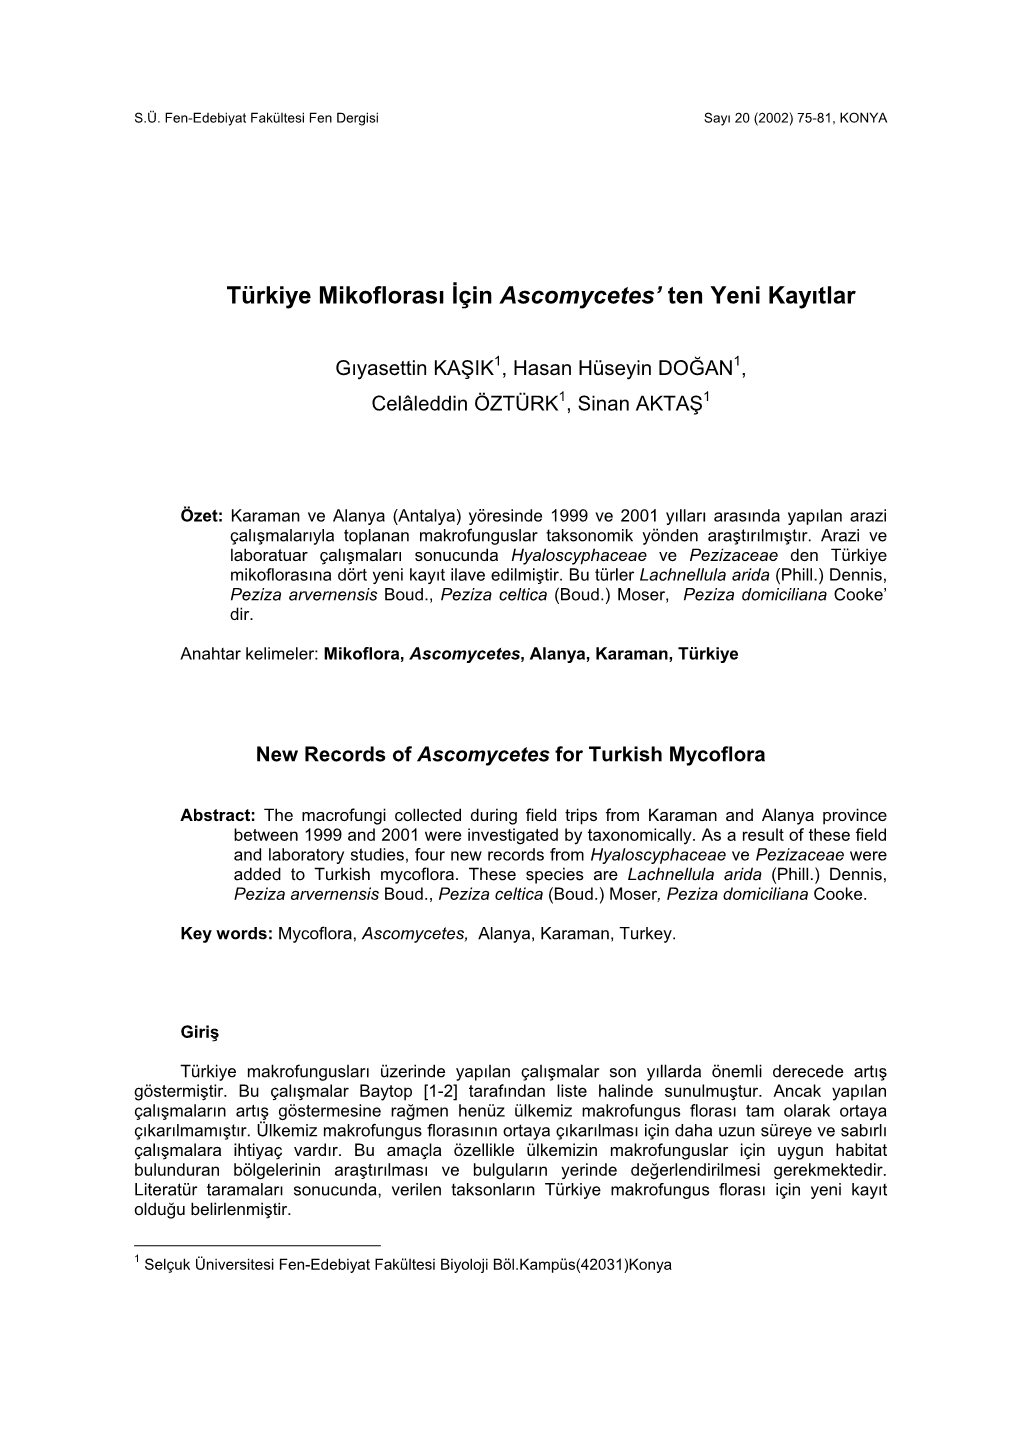 Türkiye Mikoflorası İçin Ascomycetes' Ten Yeni Kayıtlar